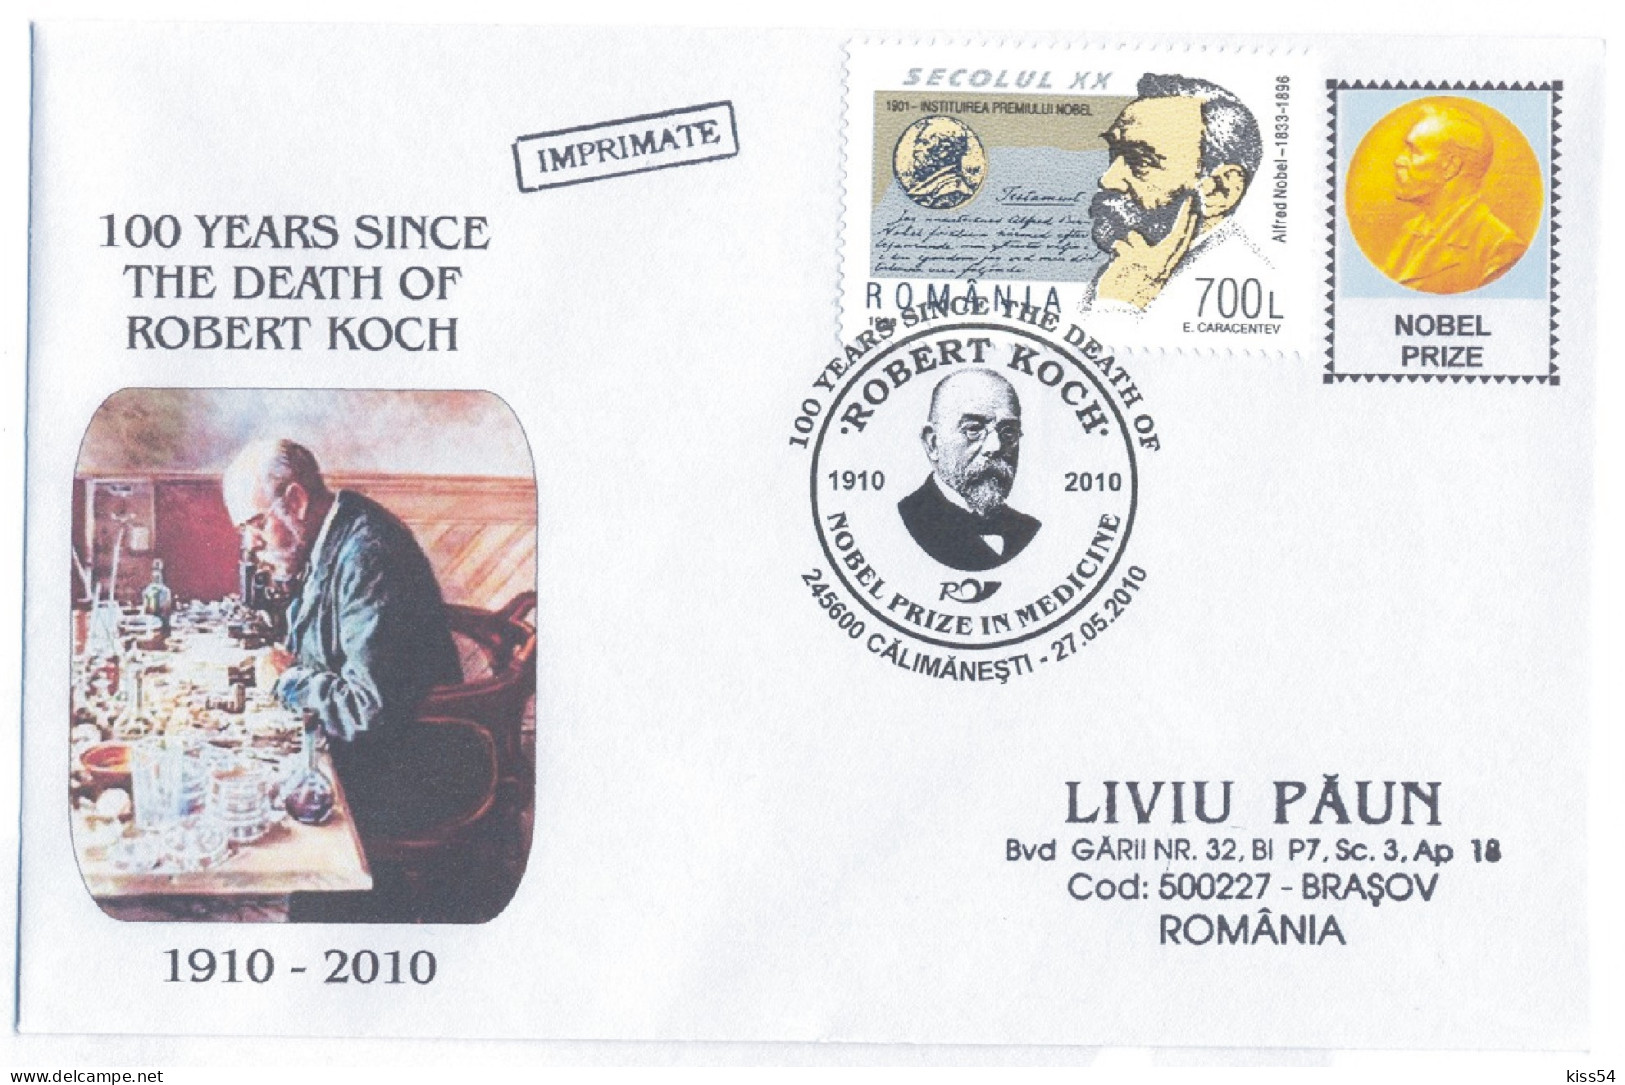 COV 17 - 1007 Robert KOCH, Nobel Prize In Medicine, Romania - Cover - Used - 2010 - Briefe U. Dokumente